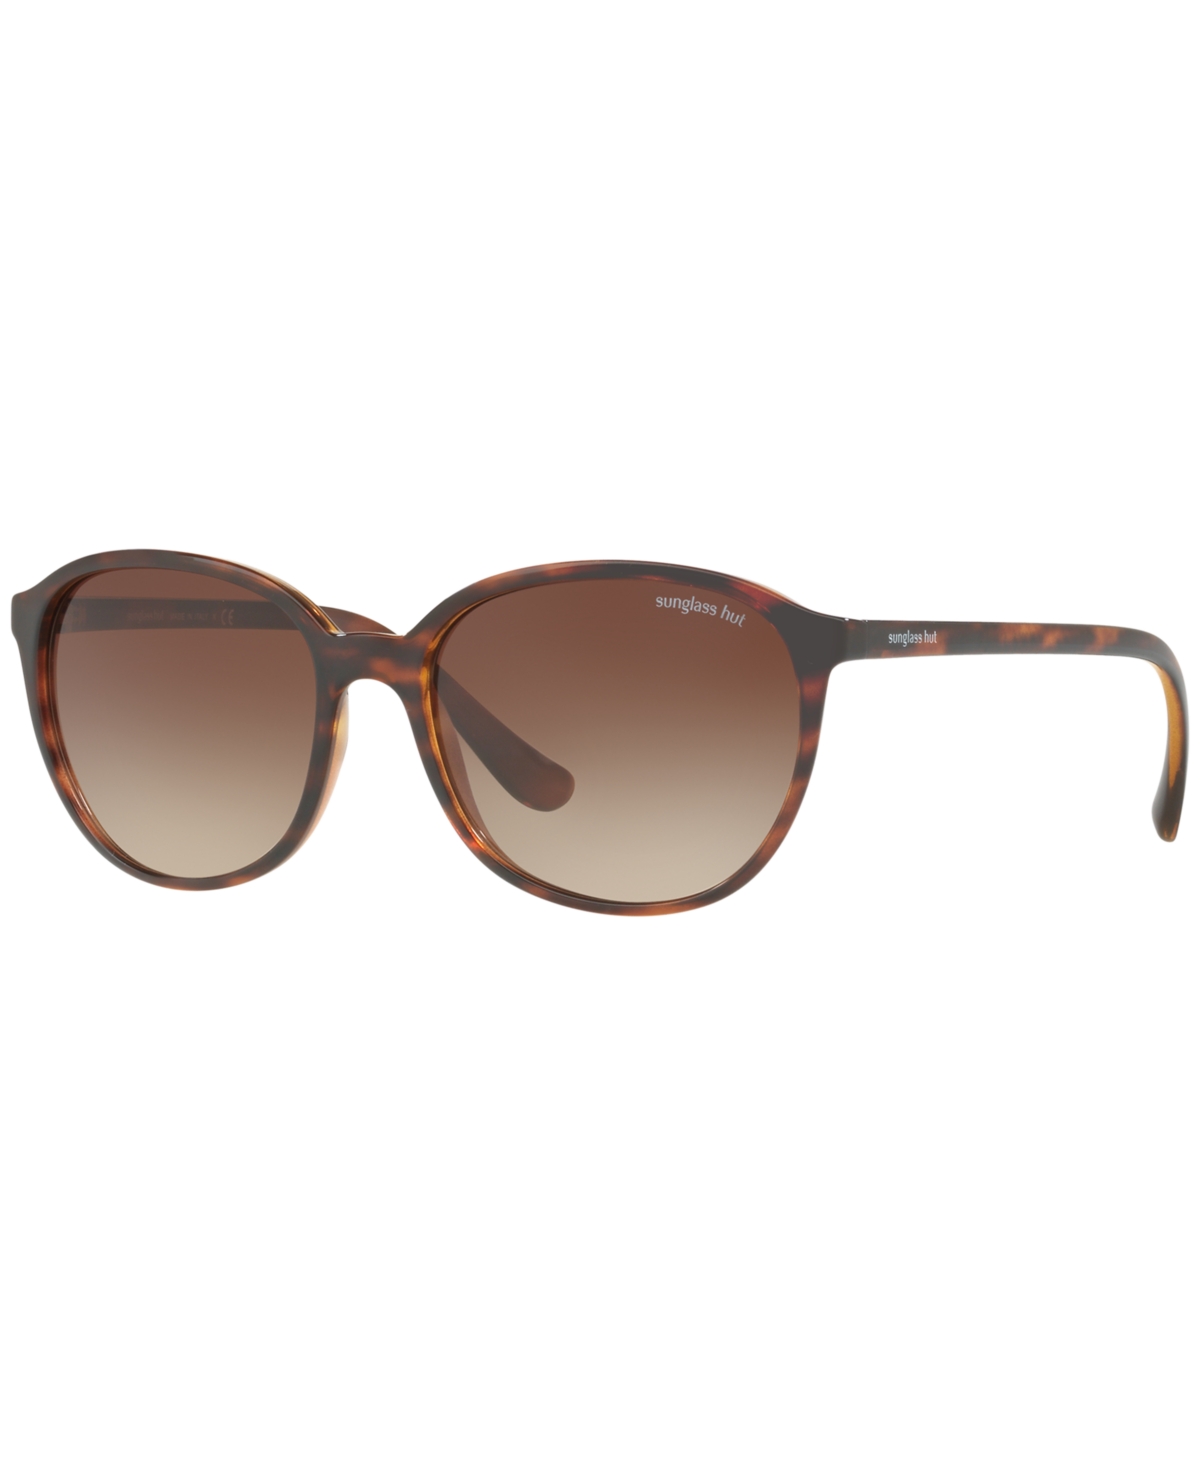 Sunglasses, HU2003 55 - BROWN/BROWN GRADIENT